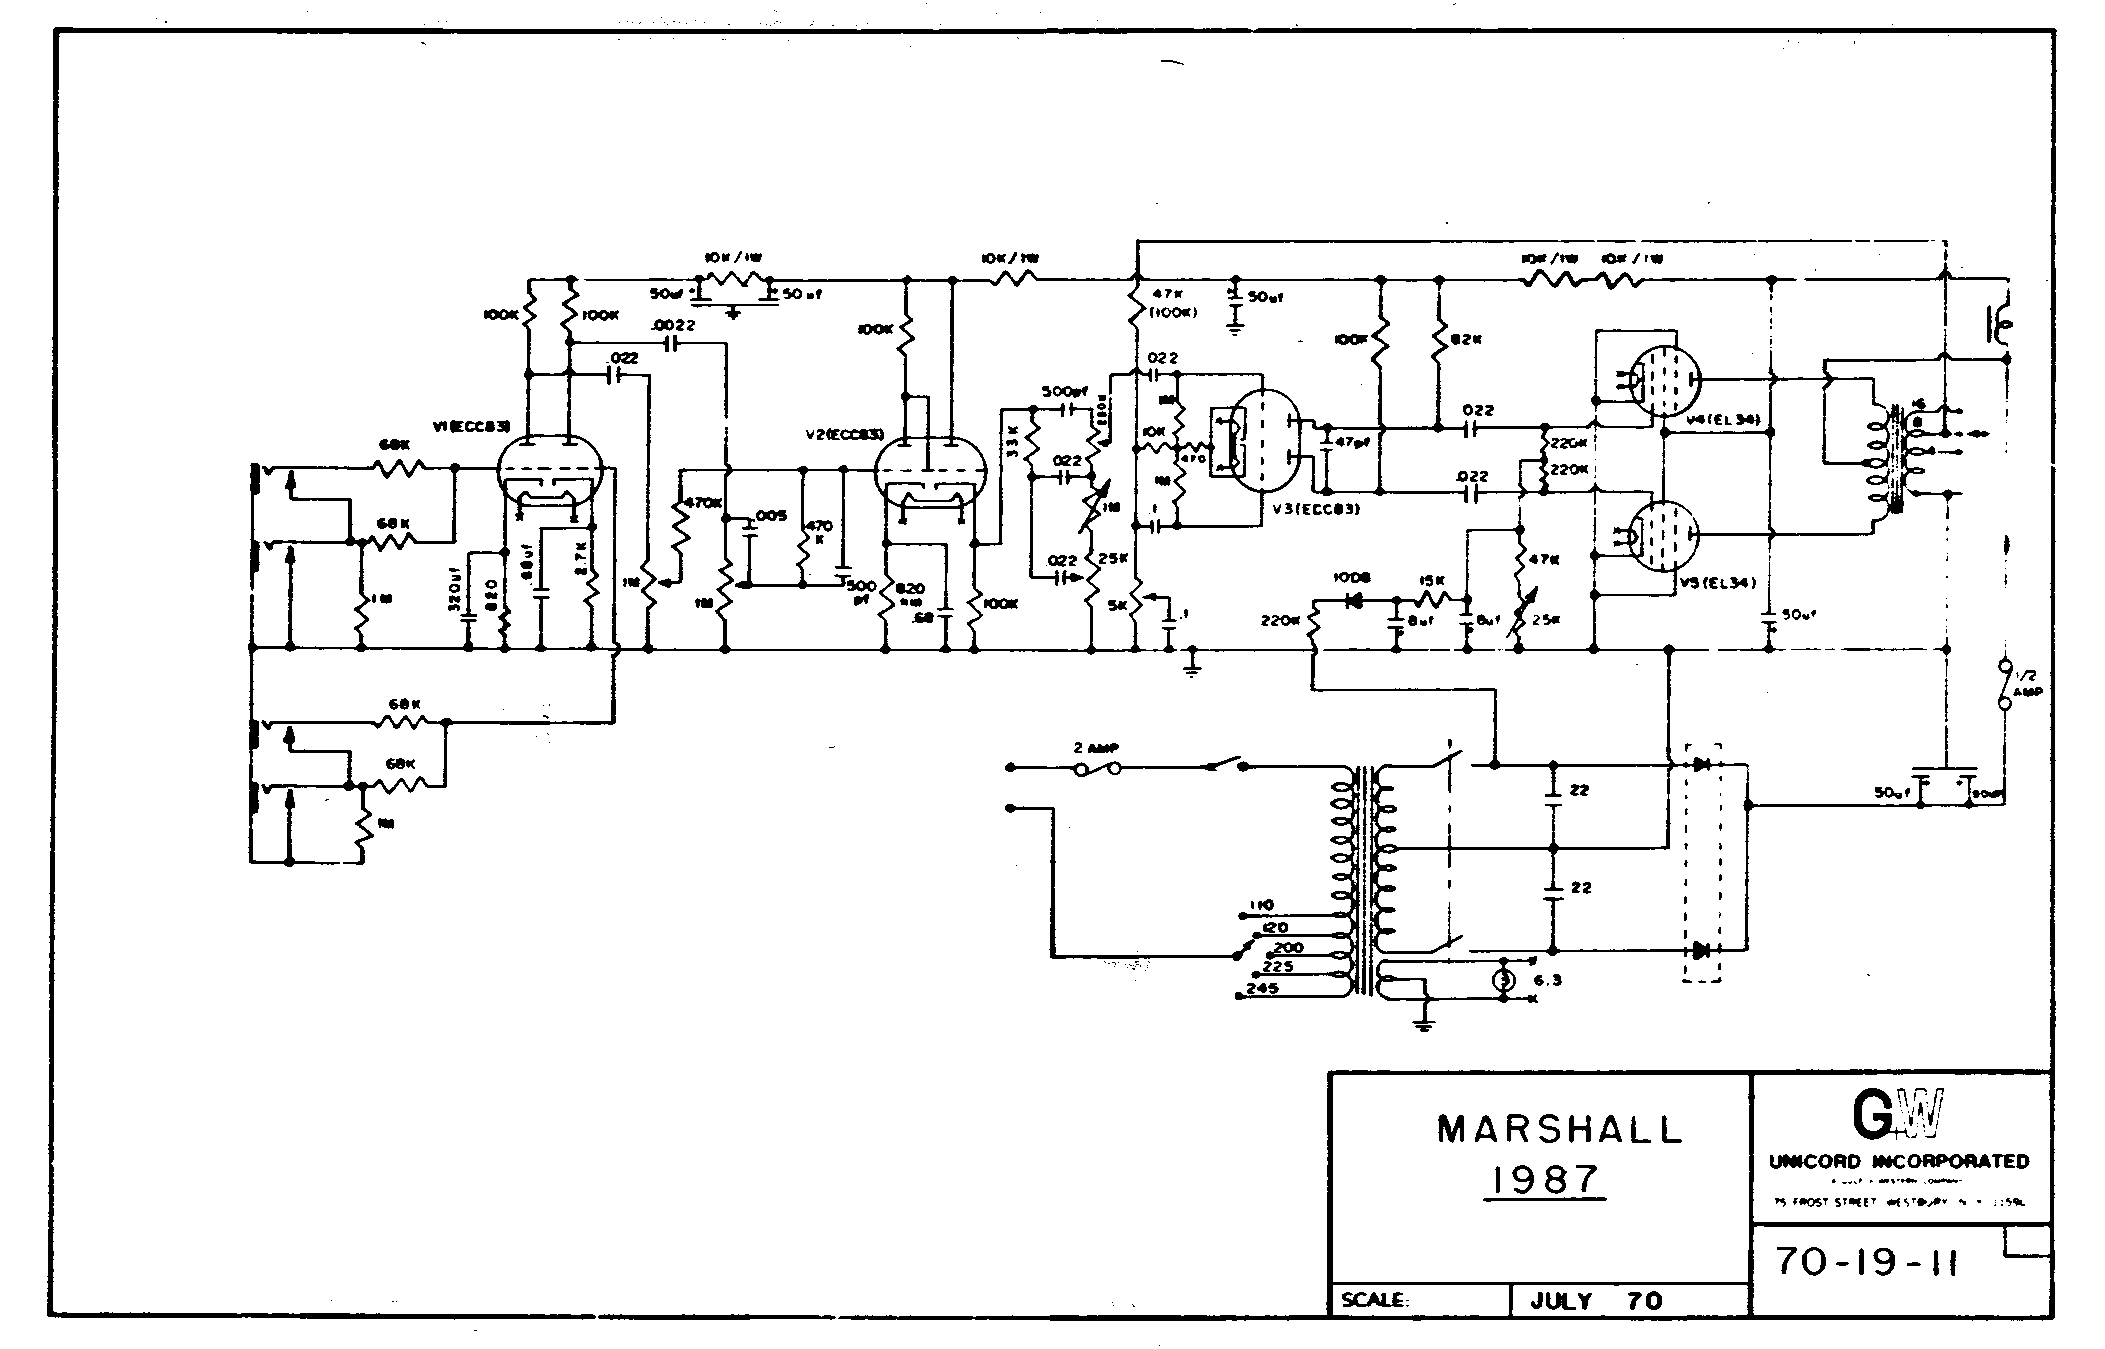 Marshall 1987 Schematic